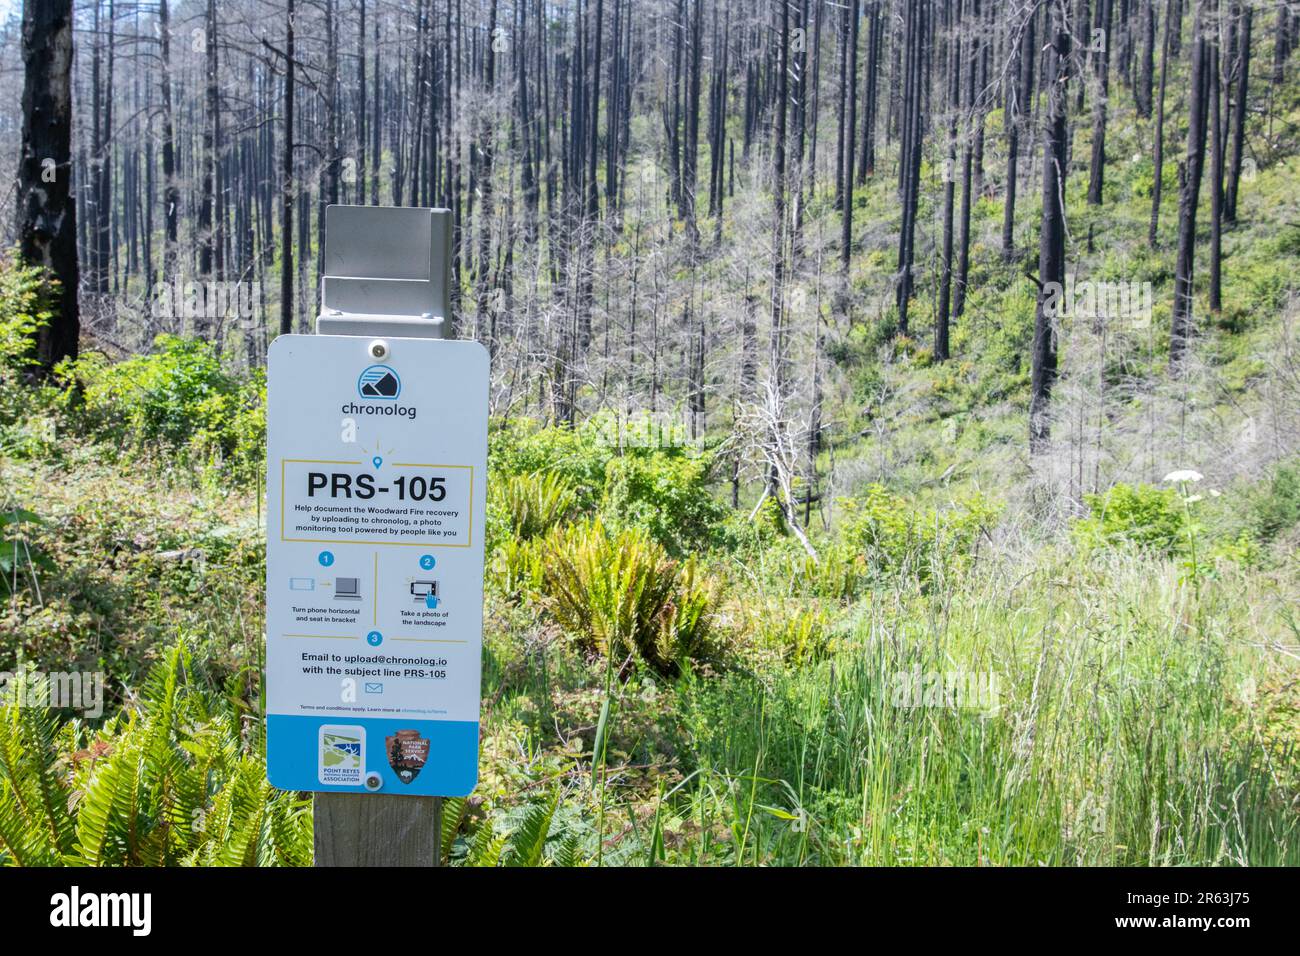 Eine Telefonplattform, die für die Gemeindewissenschaft eingerichtet ist, damit ein Foto von Waldbrandschäden gemacht werden kann und die Resilienz und Wiederherstellung des Waldes überwacht werden kann. Stockfoto